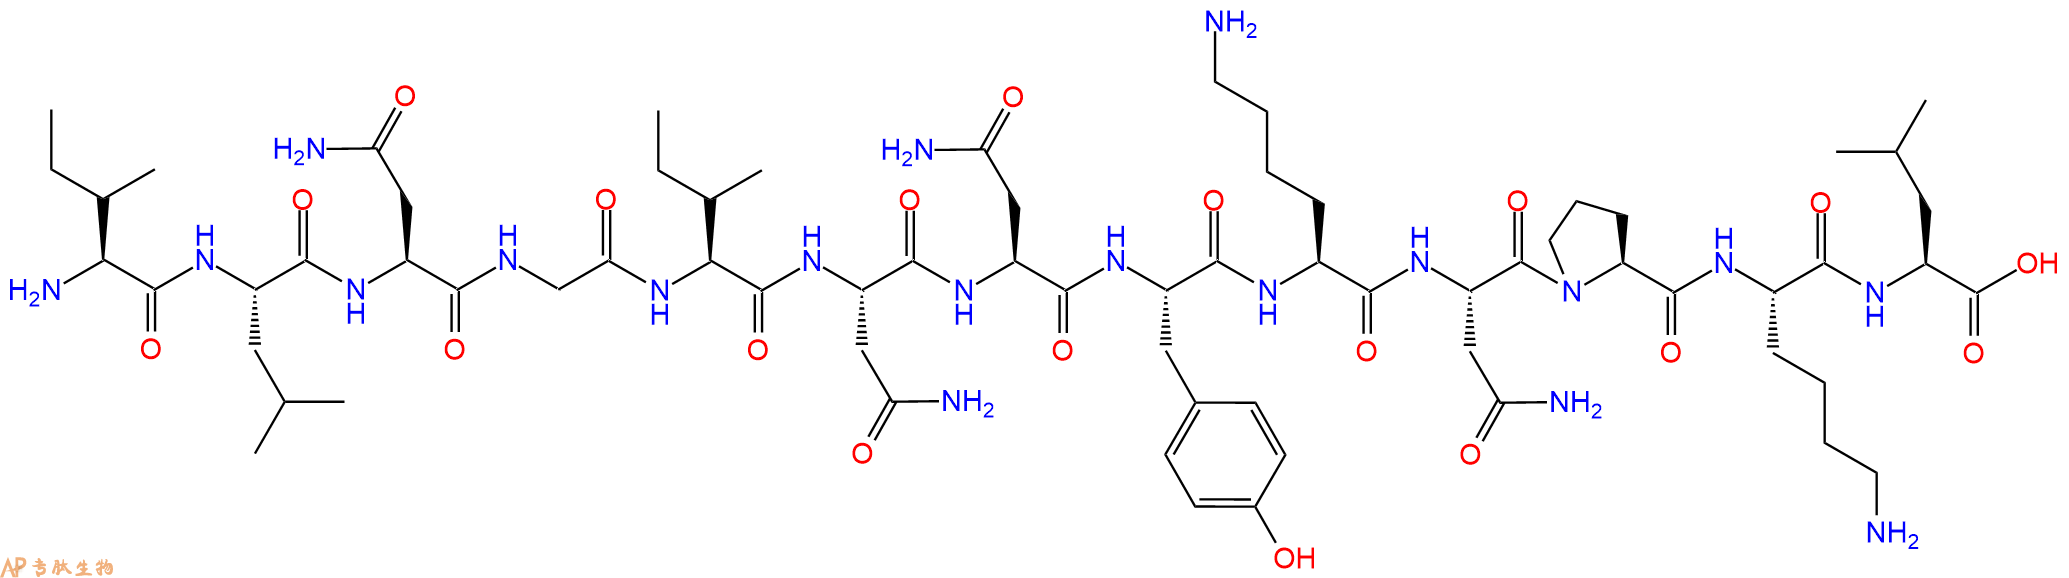 专肽生物产品β-白细胞介素II（44-56）、β-Interleukin II (44-56)